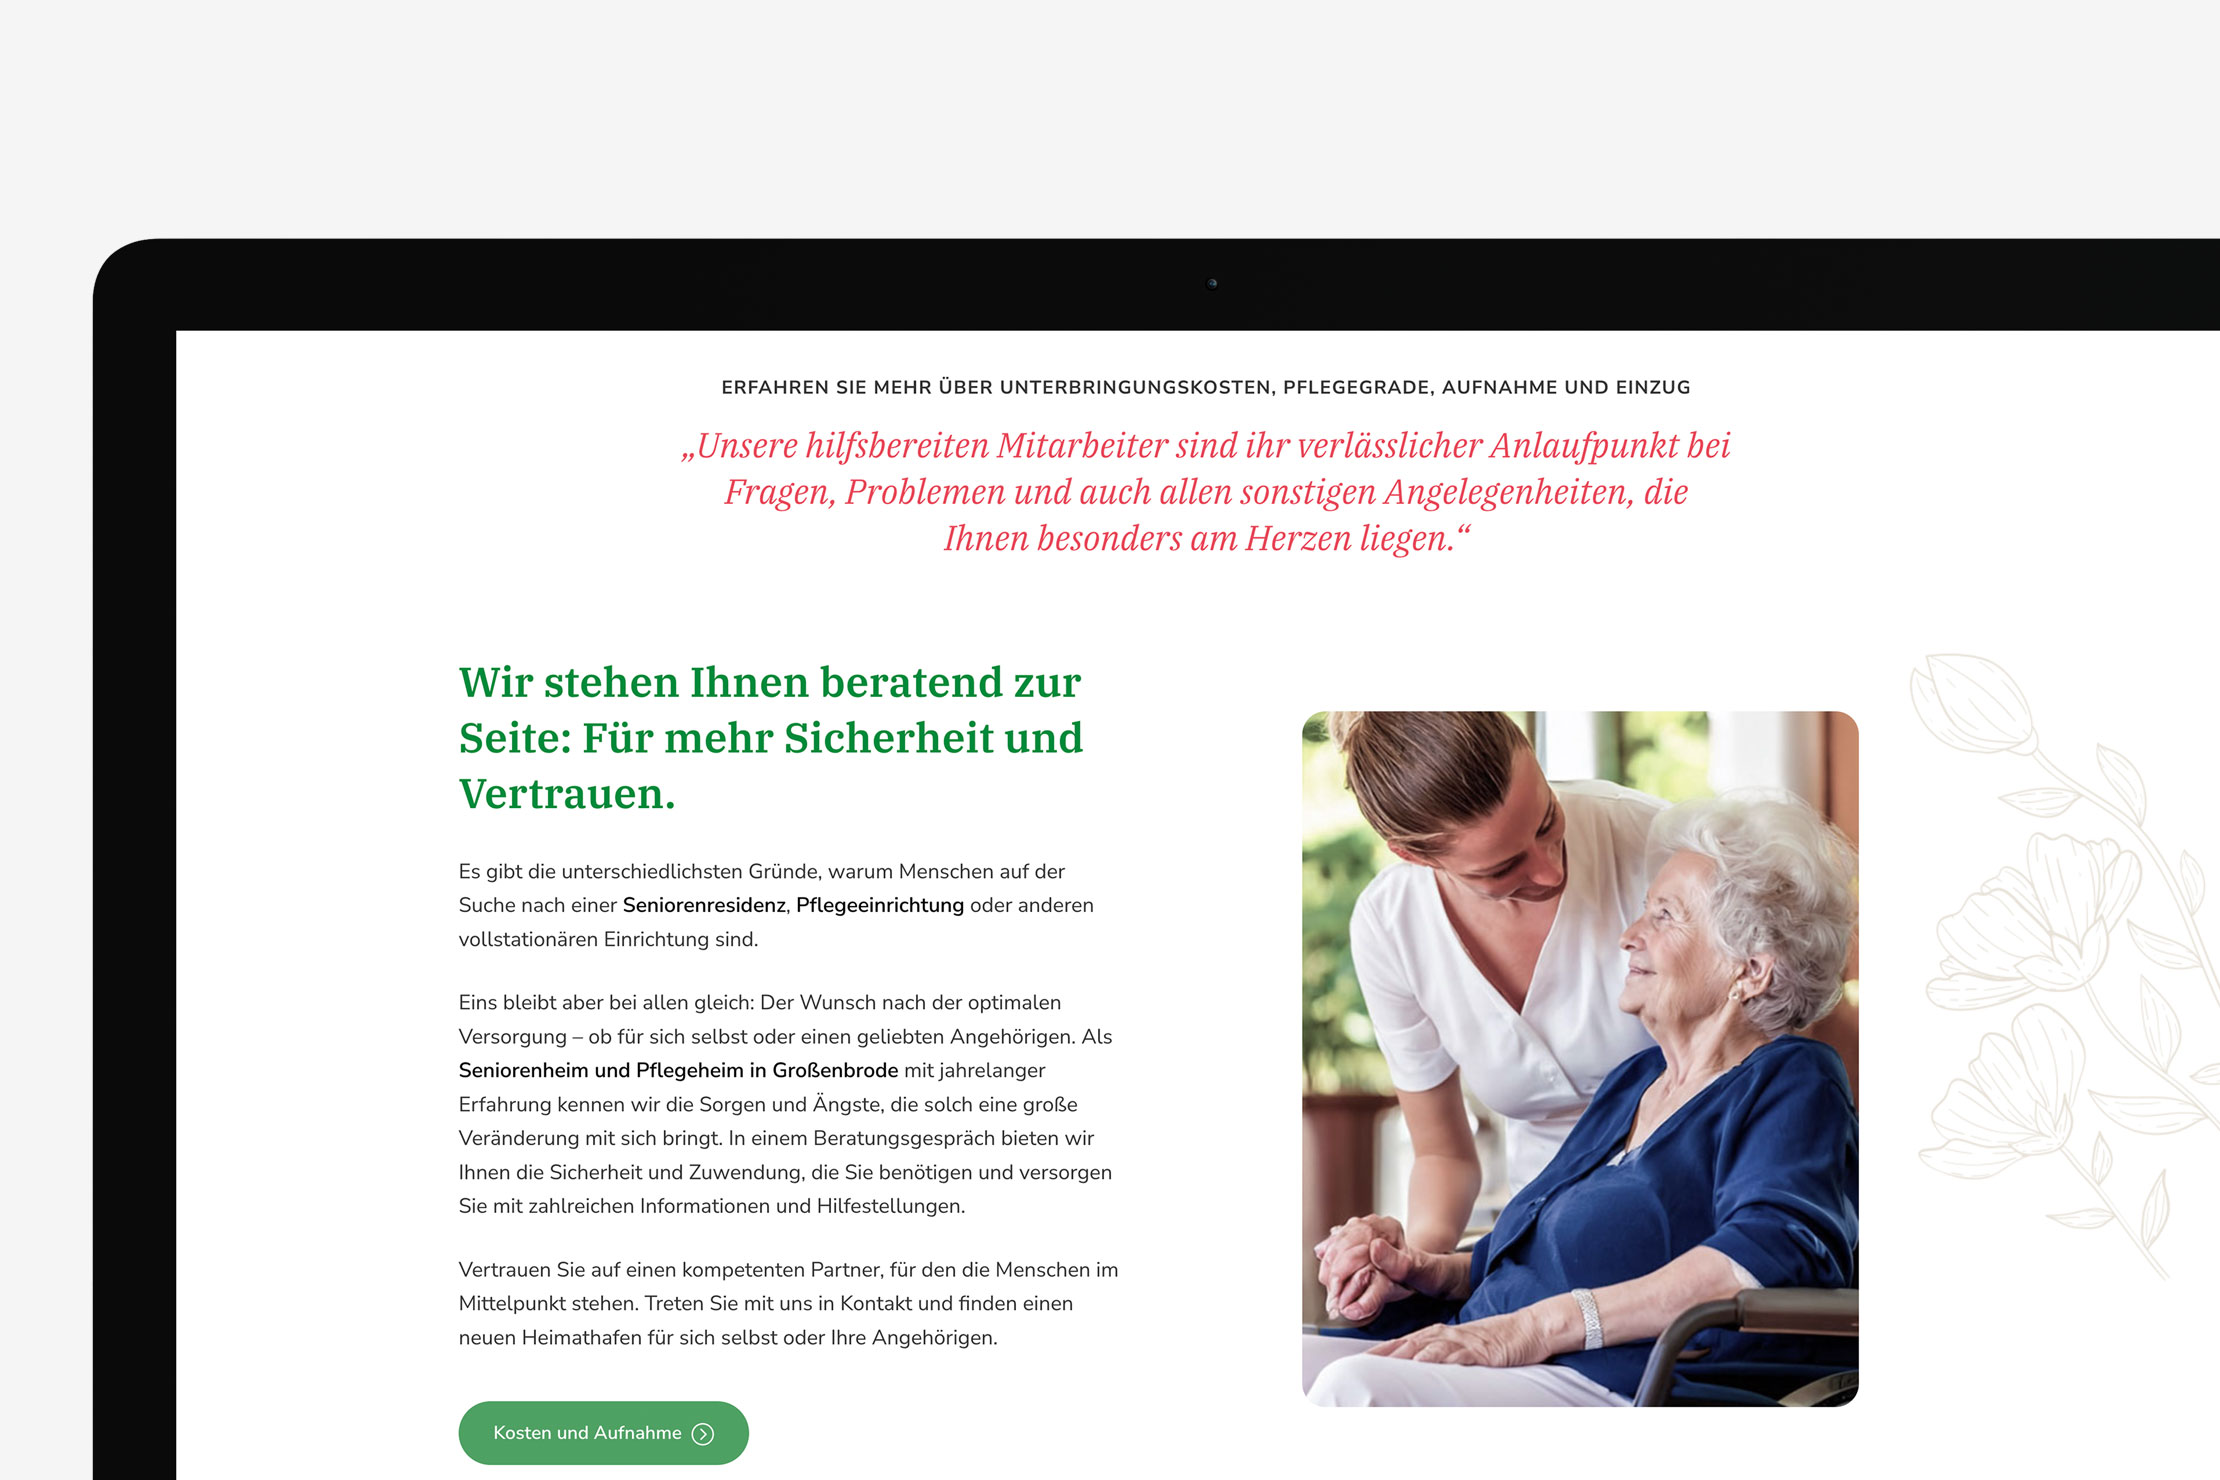 Websiteentwicklung und Responsive Webdesign mit dem Wordpress CMS für das Seniorenpflegezentrum am Sund in Großenbrode